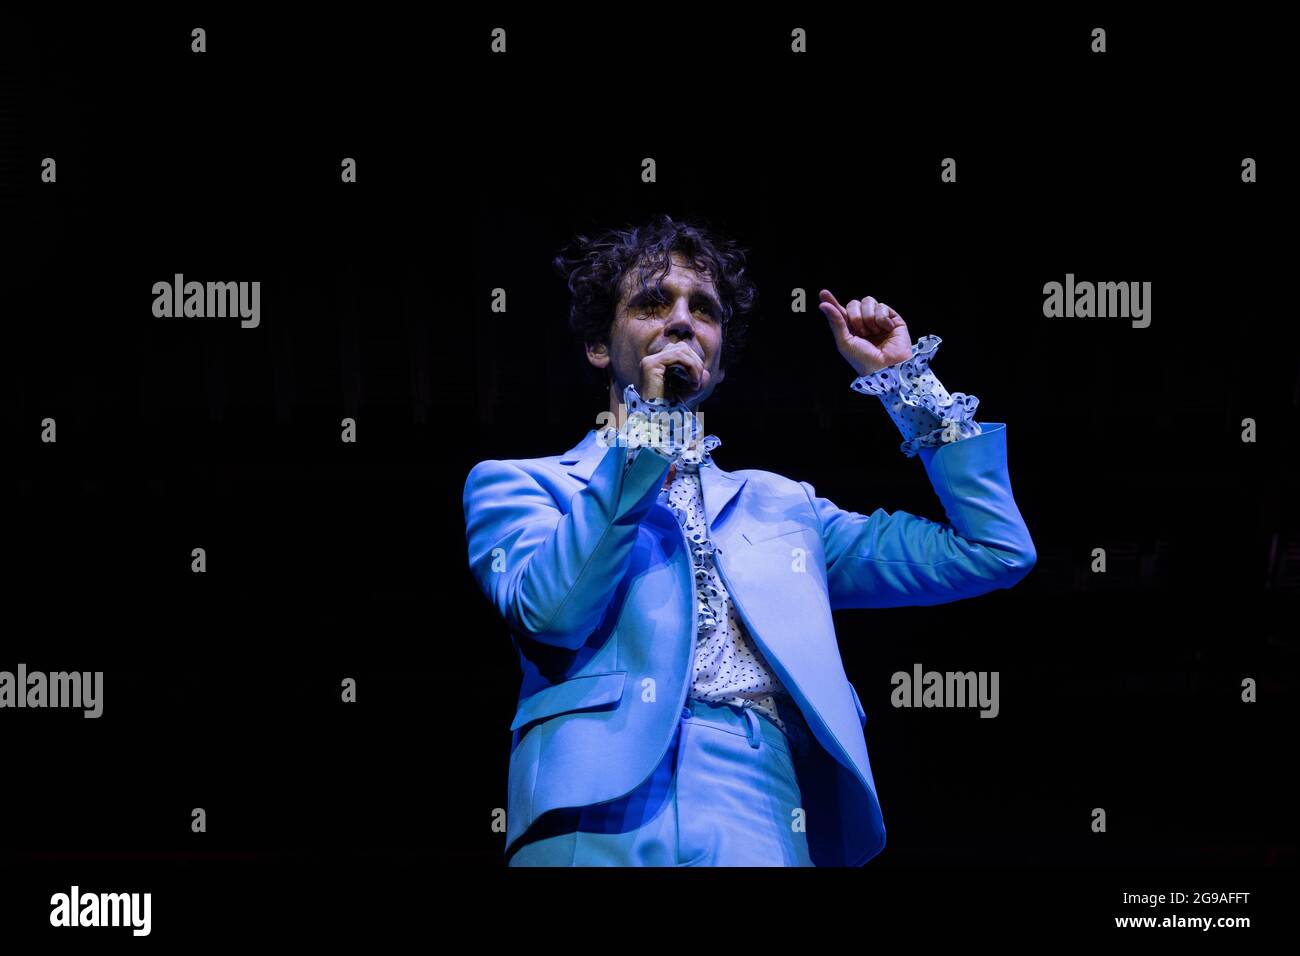 Mika lors de son concert à Pau le 15 novembre 2019 Stockfoto